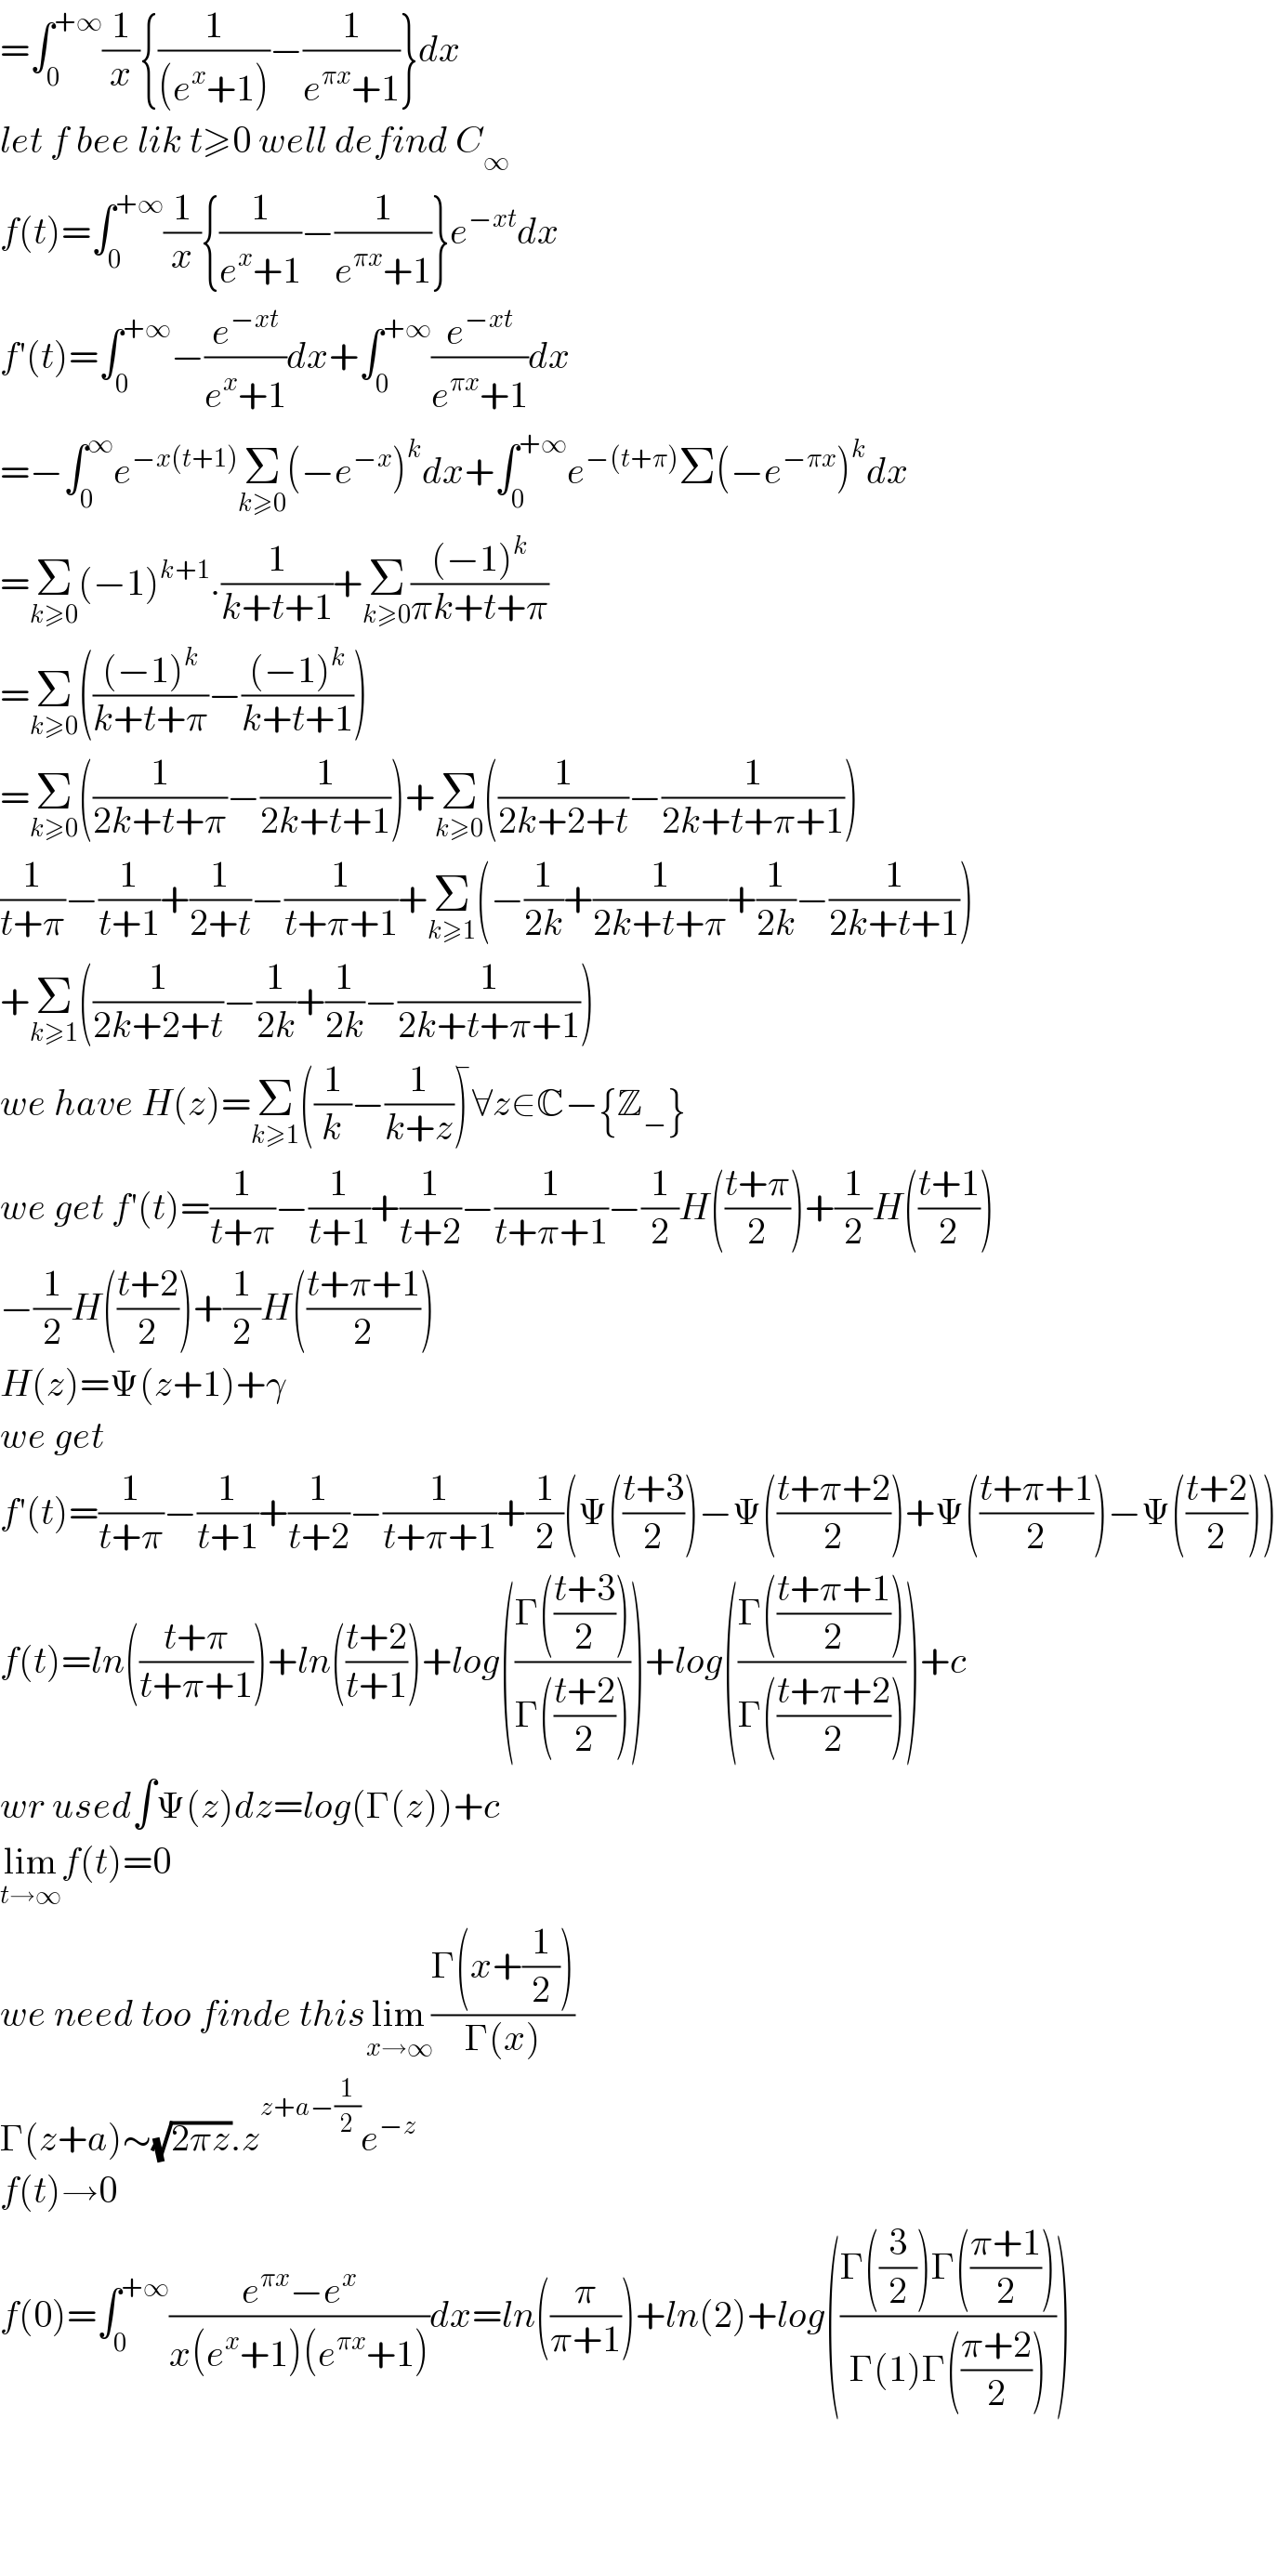 =∫_0 ^(+∞) (1/x){(1/((e^x +1)))−(1/(e^(πx) +1))}dx  let f bee lik t≥0 well defind C_∞   f(t)=∫_0 ^(+∞) (1/x){(1/(e^x +1))−(1/(e^(πx) +1))}e^(−xt) dx  f′(t)=∫_0 ^(+∞) −(e^(−xt) /(e^x +1))dx+∫_0 ^(+∞) (e^(−xt) /(e^(πx) +1))dx  =−∫_0 ^∞ e^(−x(t+1)) Σ_(k≥0) (−e^(−x) )^k dx+∫_0 ^(+∞) e^(−(t+π)) Σ(−e^(−πx) )^k dx  =Σ_(k≥0) (−1)^(k+1) .(1/(k+t+1))+Σ_(k≥0) (((−1)^k )/(πk+t+π))  =Σ_(k≥0) ((((−1)^k )/(k+t+π))−(((−1)^k )/(k+t+1)))  =Σ_(k≥0) ((1/(2k+t+π))−(1/(2k+t+1)))+Σ_(k≥0) ((1/(2k+2+t))−(1/(2k+t+π+1)))  (1/(t+π))−(1/(t+1))+(1/(2+t))−(1/(t+π+1))+Σ_(k≥1) (−(1/(2k))+(1/(2k+t+π))+(1/(2k))−(1/(2k+t+1)))  +Σ_(k≥1) ((1/(2k+2+t))−(1/(2k))+(1/(2k))−(1/(2k+t+π+1)))  we have H(z)=Σ_(k≥1) ((1/k)−(1/(k+z)))^  ∀z∈C−{Z_− }  we get f′(t)=(1/(t+π))−(1/(t+1))+(1/(t+2))−(1/(t+π+1))−(1/2)H(((t+π)/2))+(1/2)H(((t+1)/2))  −(1/2)H(((t+2)/2))+(1/2)H(((t+π+1)/2))  H(z)=Ψ(z+1)+γ  we get  f′(t)=(1/(t+π))−(1/(t+1))+(1/(t+2))−(1/(t+π+1))+(1/2)(Ψ(((t+3)/2))−Ψ(((t+π+2)/2))+Ψ(((t+π+1)/2))−Ψ(((t+2)/2)))  f(t)=ln(((t+π)/(t+π+1)))+ln(((t+2)/(t+1)))+log(((Γ(((t+3)/2)))/(Γ(((t+2)/2)))))+log(((Γ(((t+π+1)/2)))/(Γ(((t+π+2)/2)))))+c  wr used∫Ψ(z)dz=log(Γ(z))+c  lim_(t→∞) f(t)=0  we need too finde thislim_(x→∞) ((Γ(x+(1/2)))/(Γ(x)))  Γ(z+a)∼(√(2πz)).z^(z+a−(1/2)) e^(−z)   f(t)→0  f(0)=∫_0 ^(+∞) ((e^(πx) −e^x )/(x(e^x +1)(e^(πx) +1)))dx=ln((π/(π+1)))+ln(2)+log(((Γ((3/2))Γ(((π+1)/2)))/(Γ(1)Γ(((π+2)/2)))))        